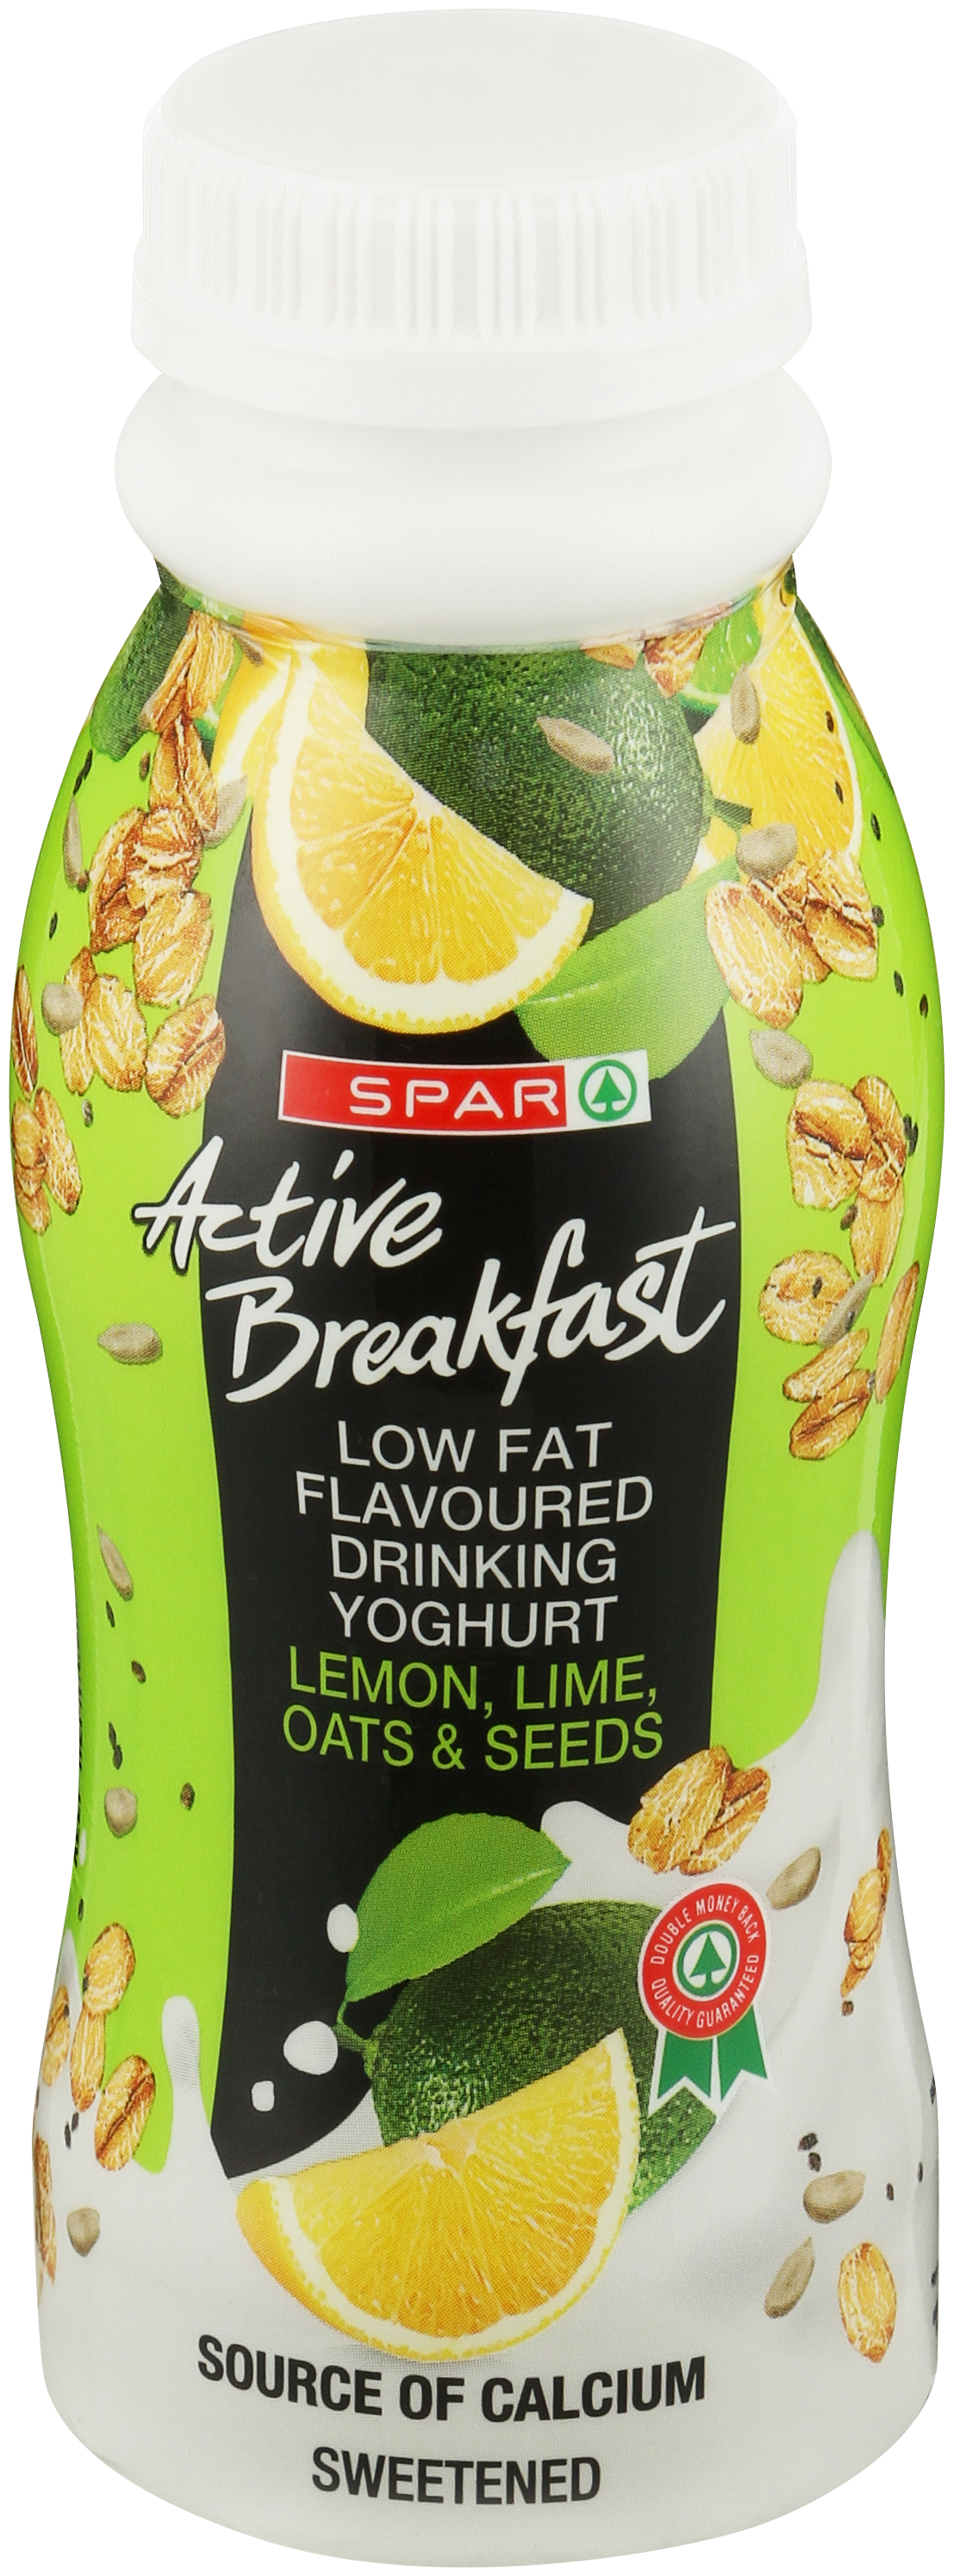 active breakfast lemon, lime & oats